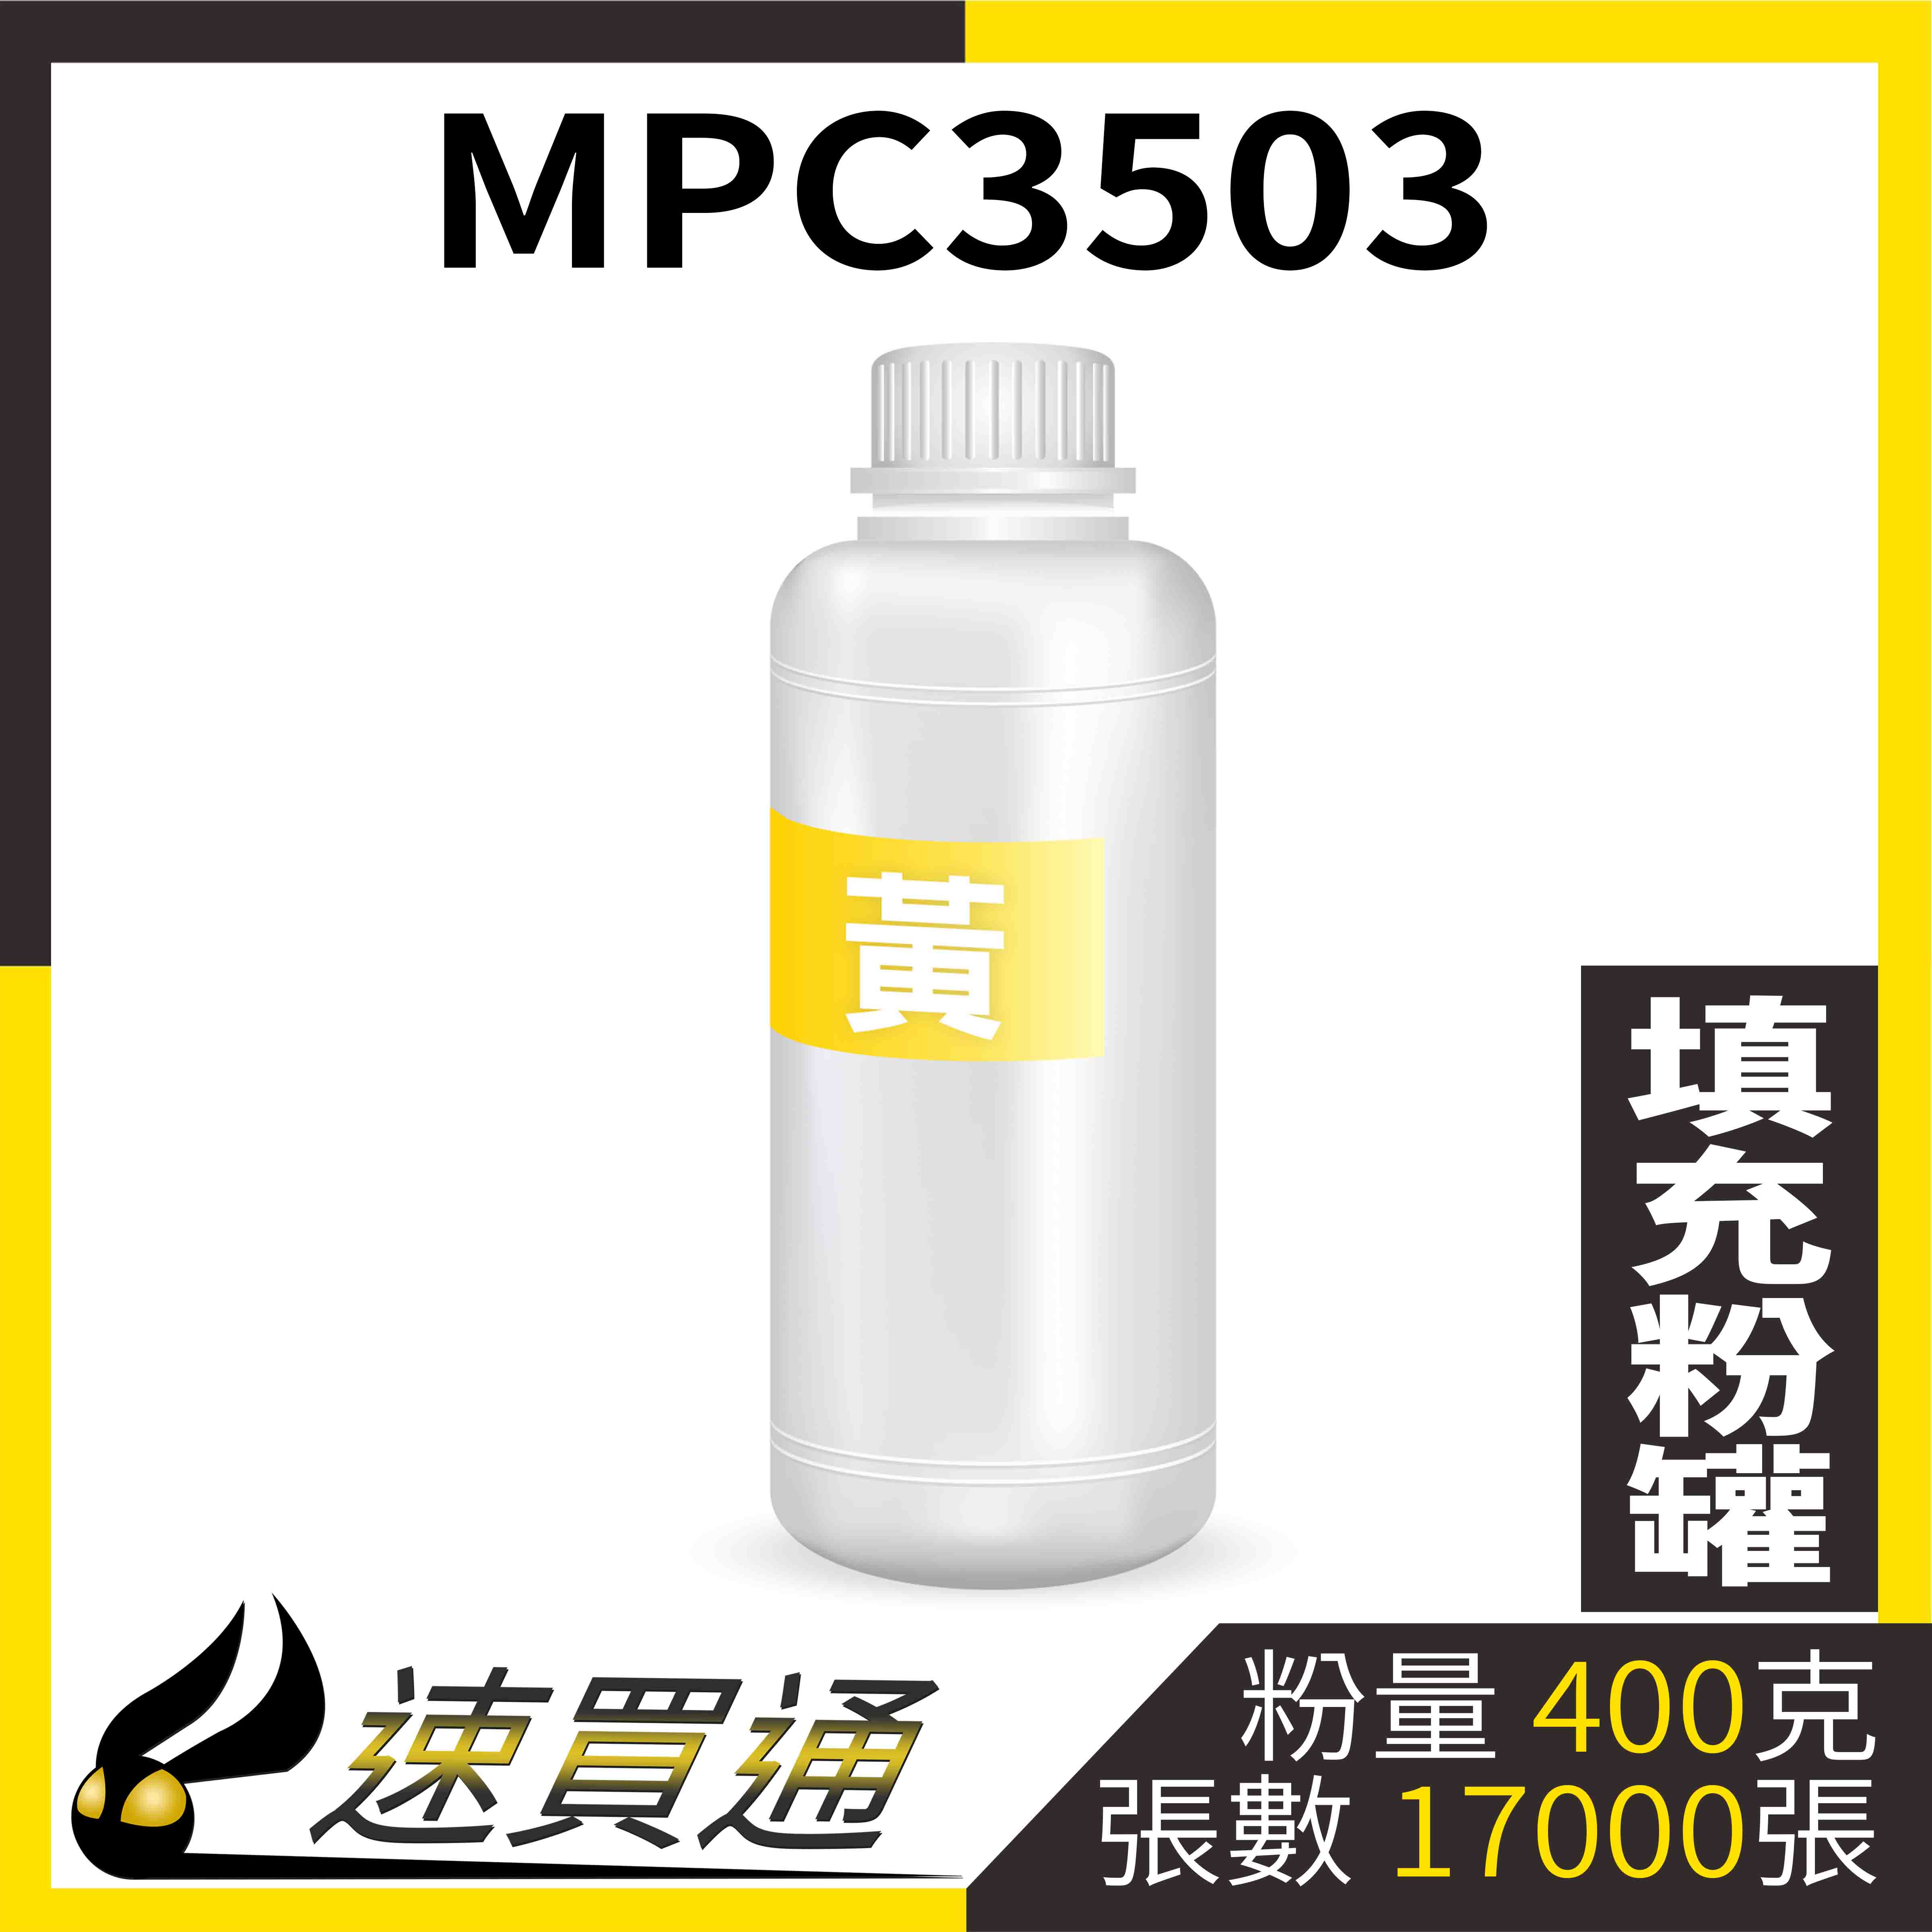 【速買通】RICOH MPC3503 黃 填充式碳粉罐